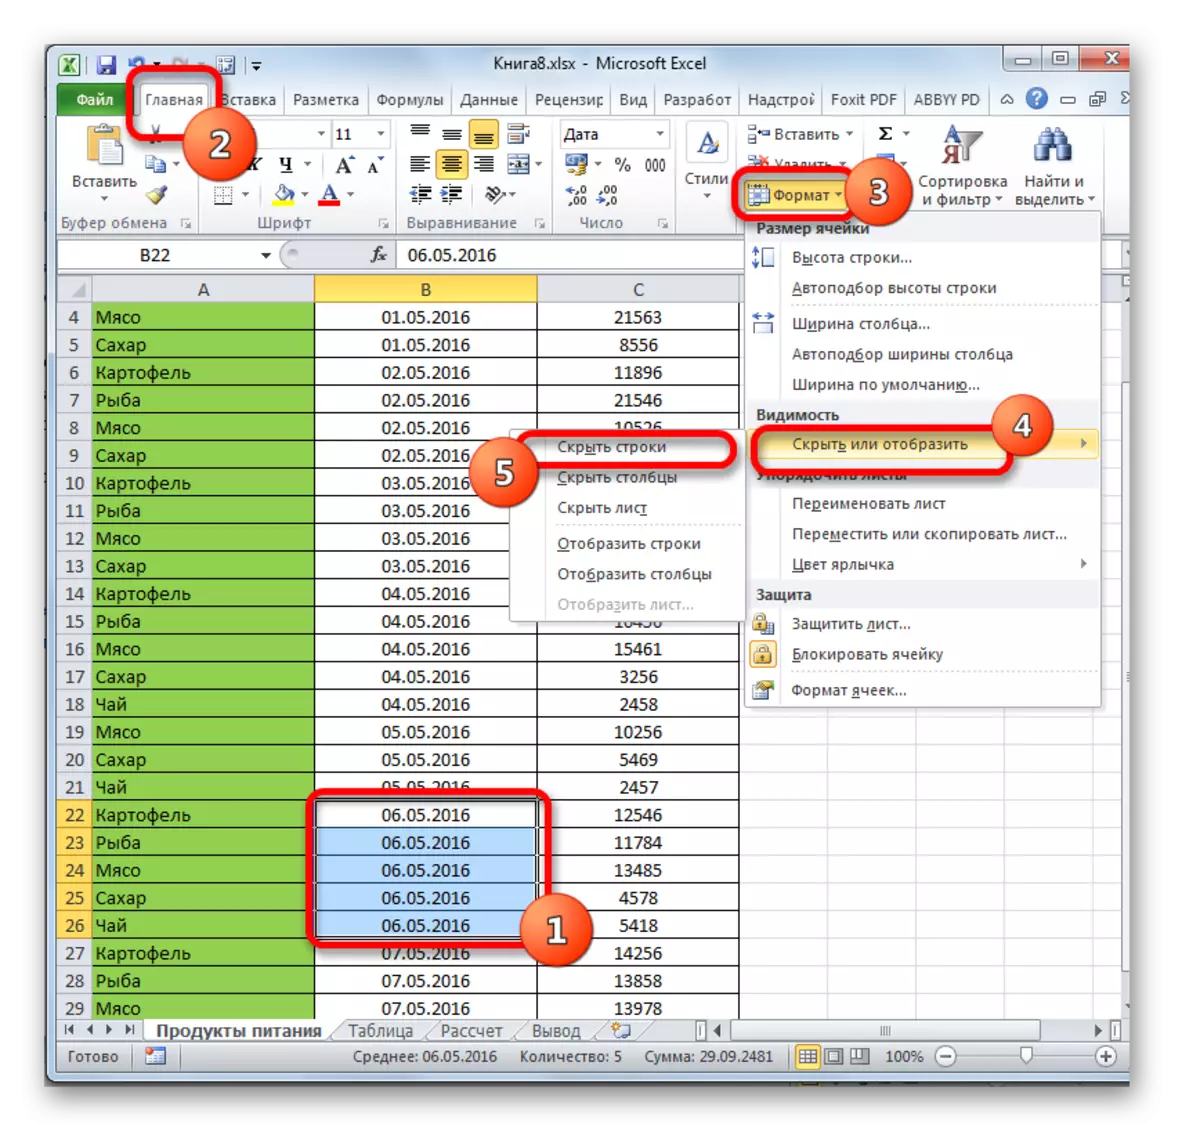 Microsoft Excel-en zinta zinta bidez ezkutatzea